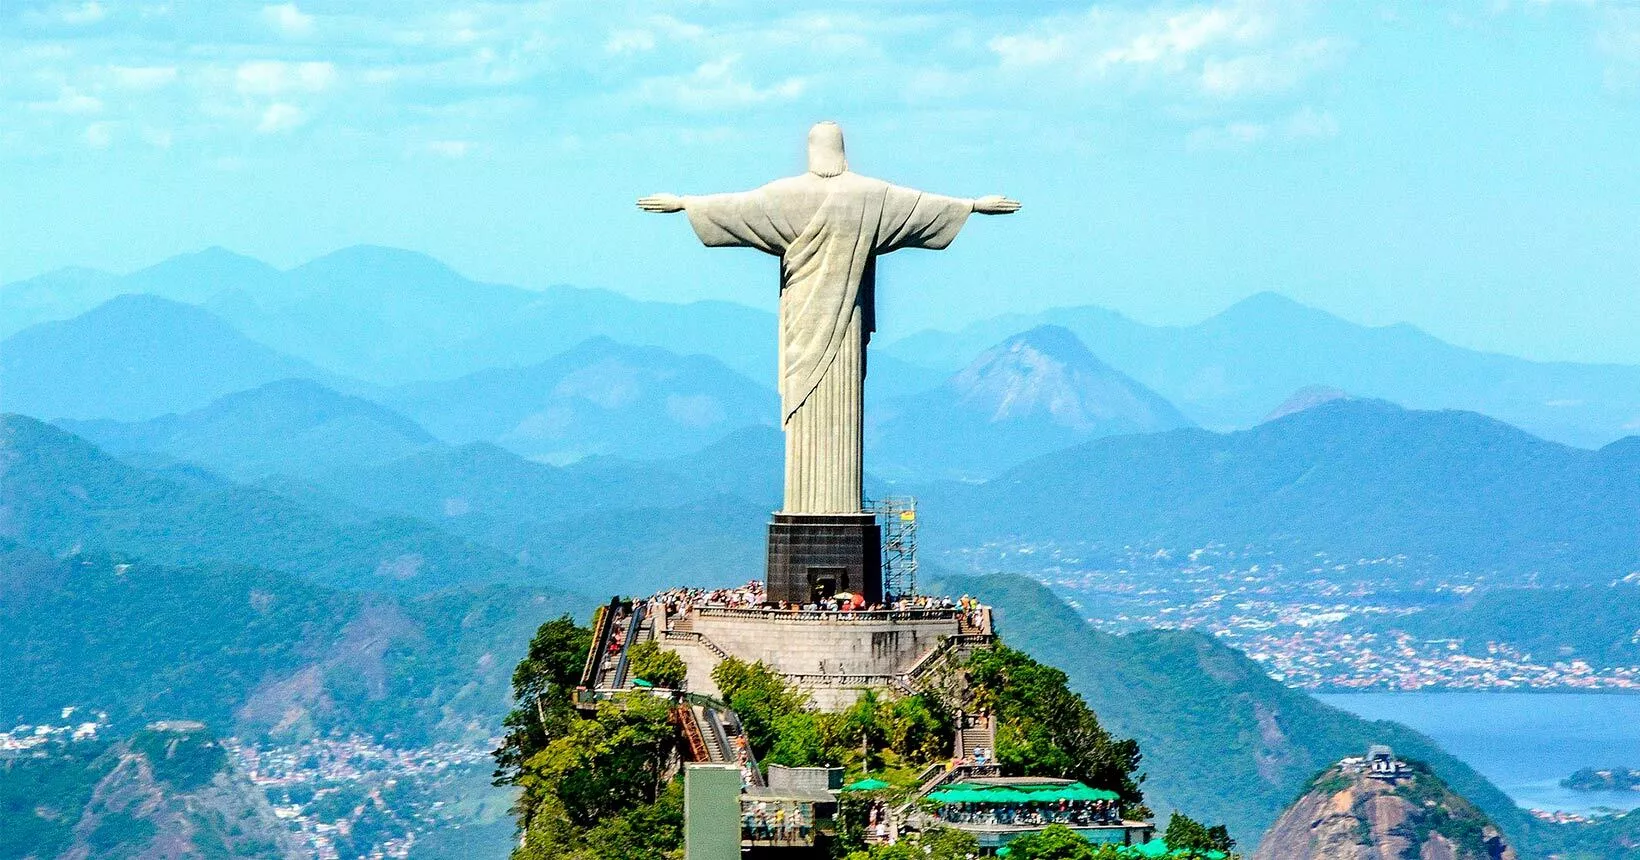 Voos Para O Rio De Janeiro A Partir De R$ 300 Saindo De So Paulo E Mais Cidades!